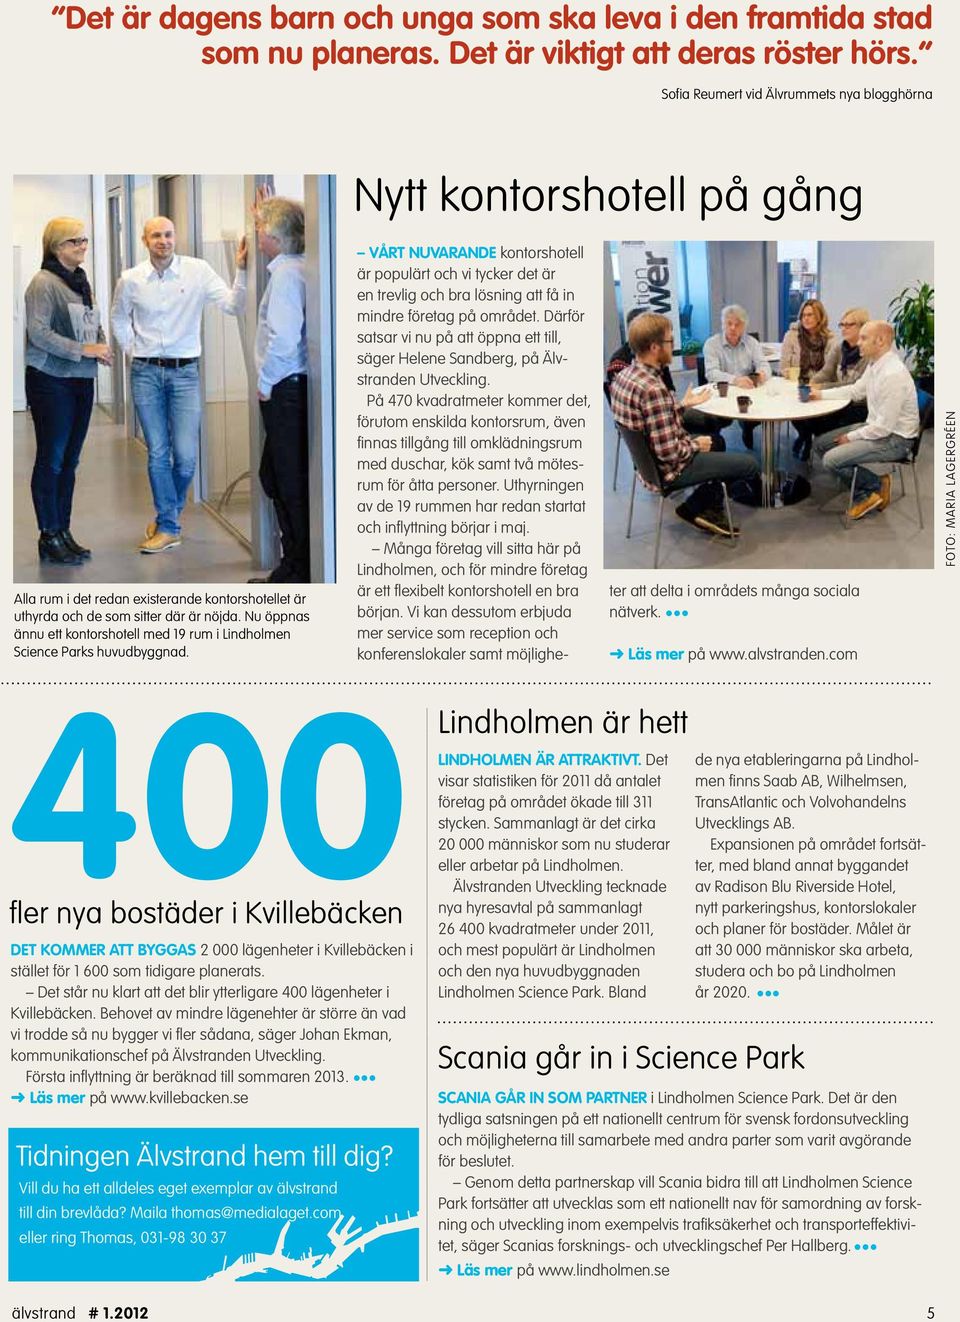 Nu öppnas ännu ett kontorshotell med 19 rum i Lindholmen Science Parks huvudbyggnad.